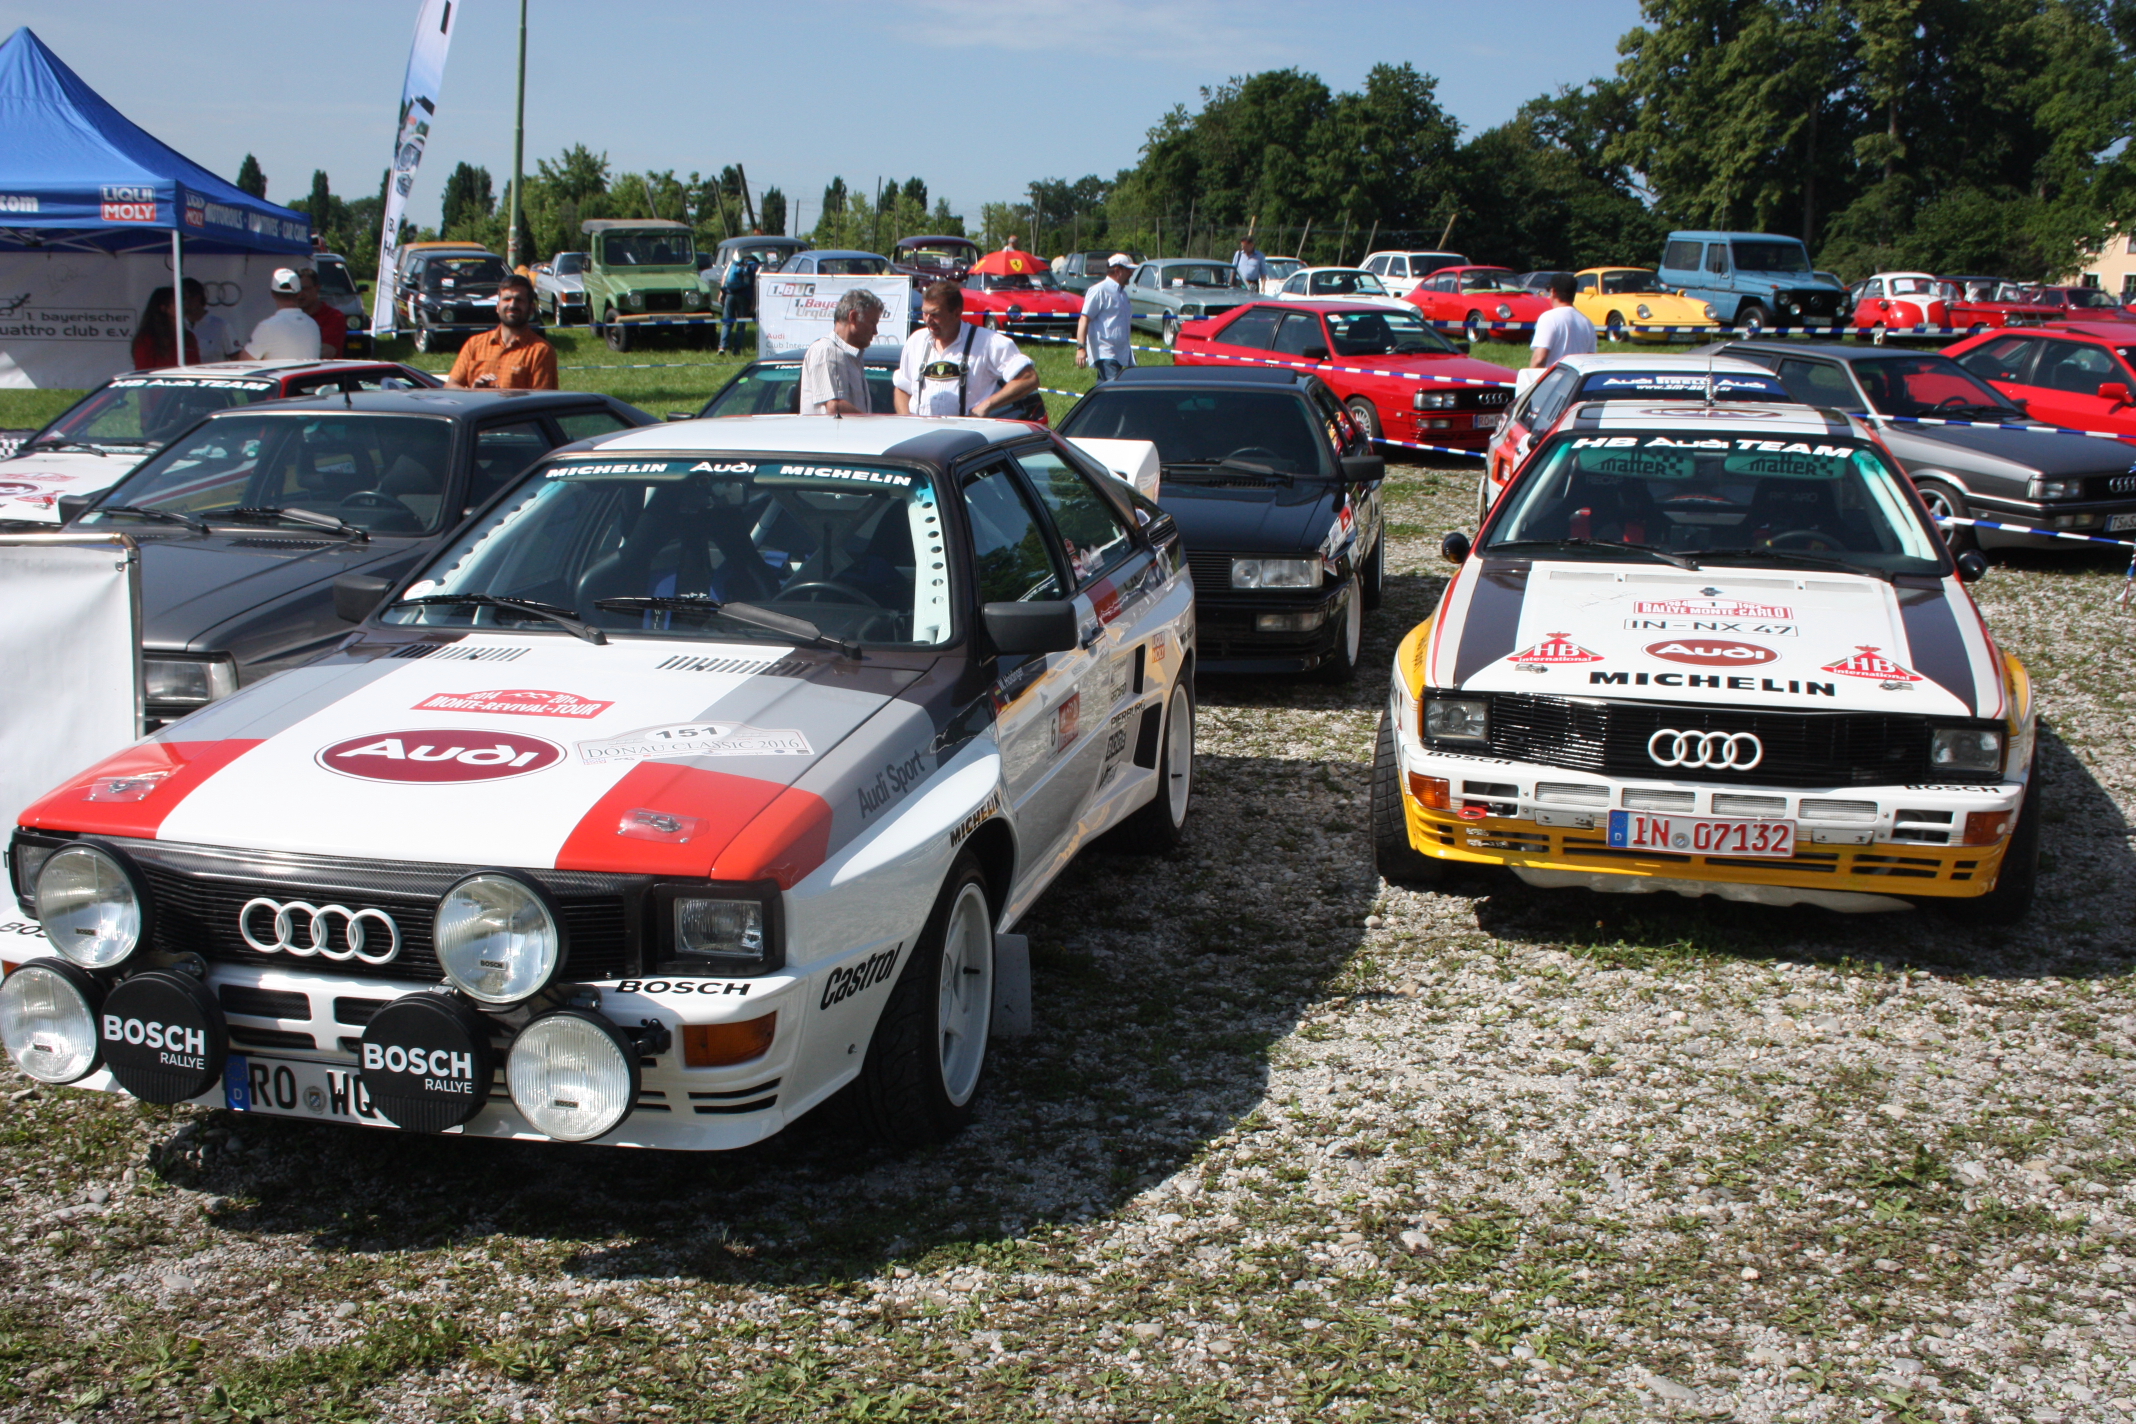 Ukázal se i bezpočet jednotlivých klubů, jako přátelé vozů Audi Quattro